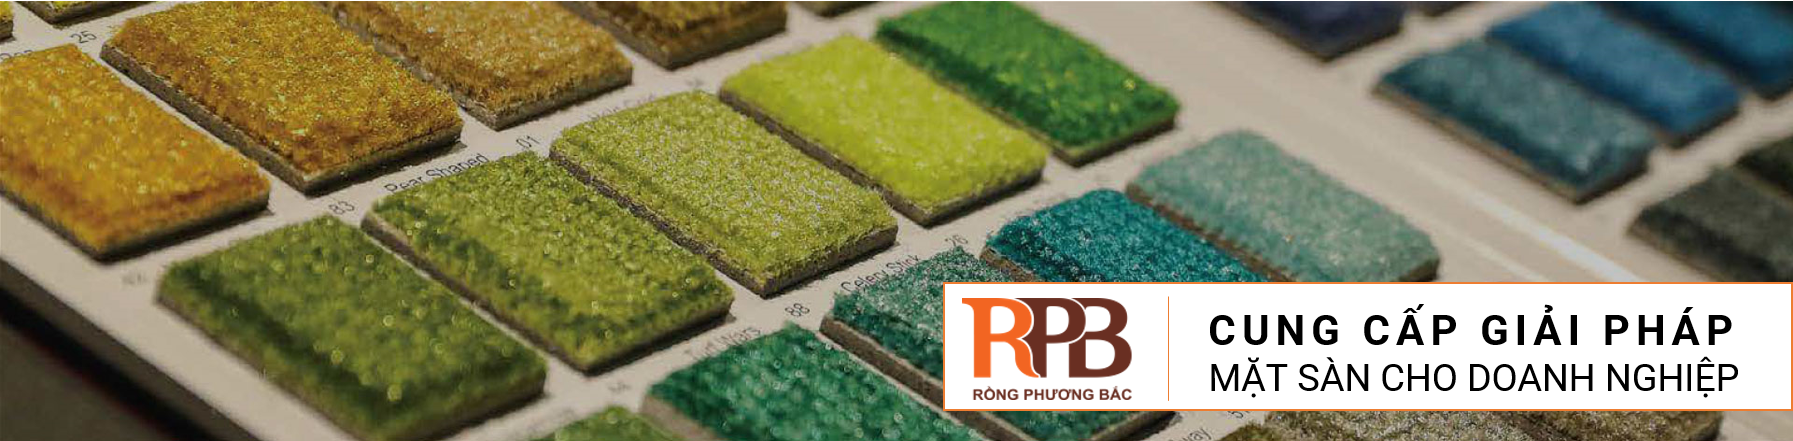 RPB Flooring - Giải pháp mặt sàn cho doanh nghiệp